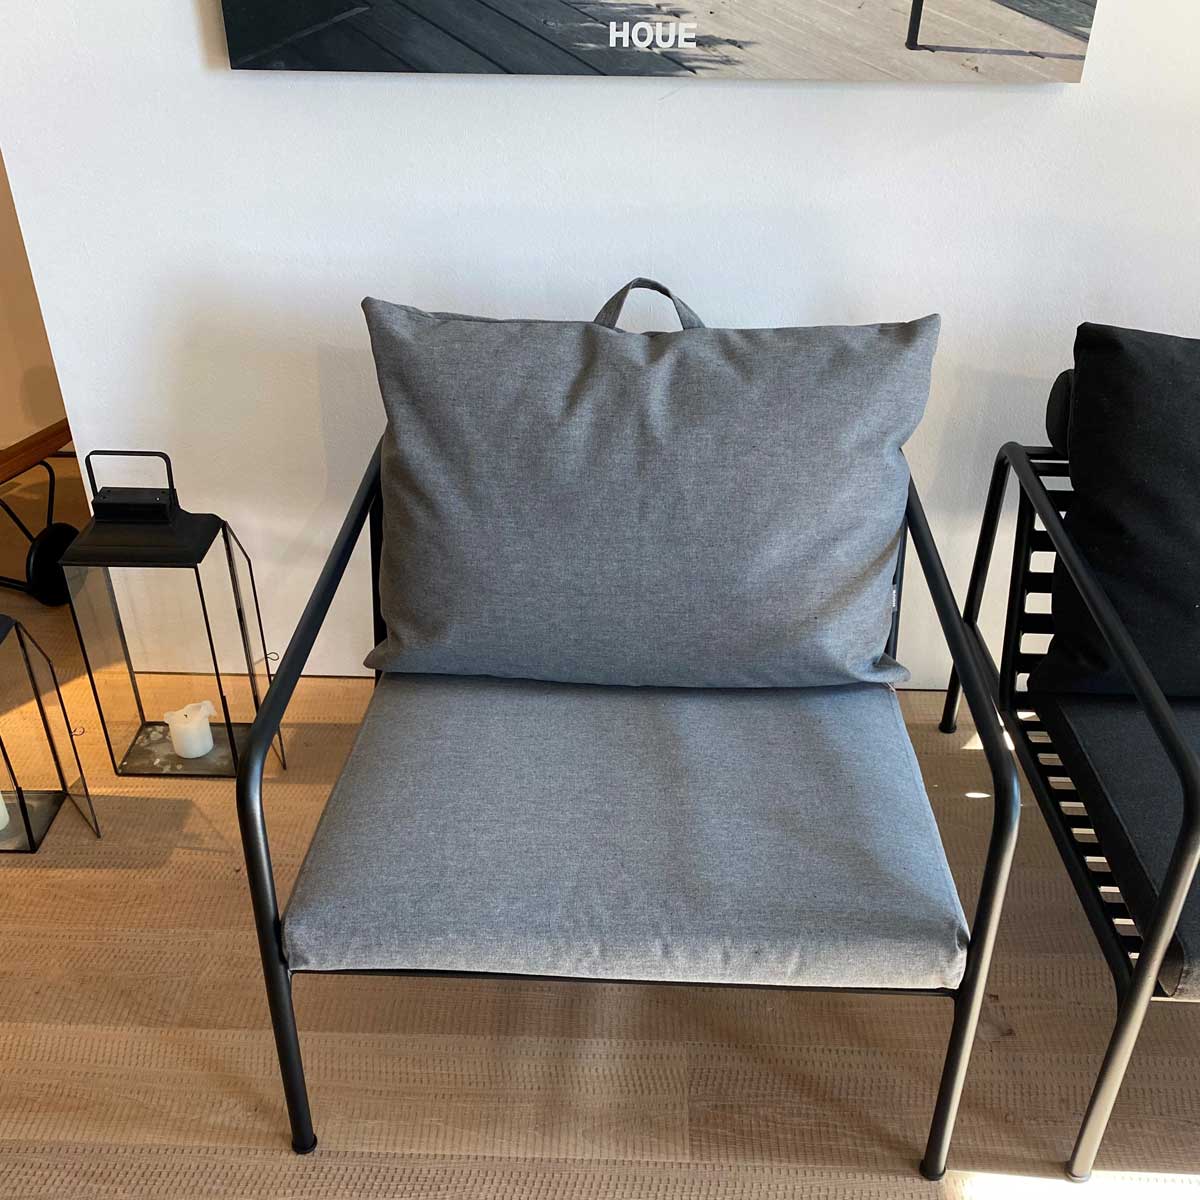 Houe Avon Lounge Chair